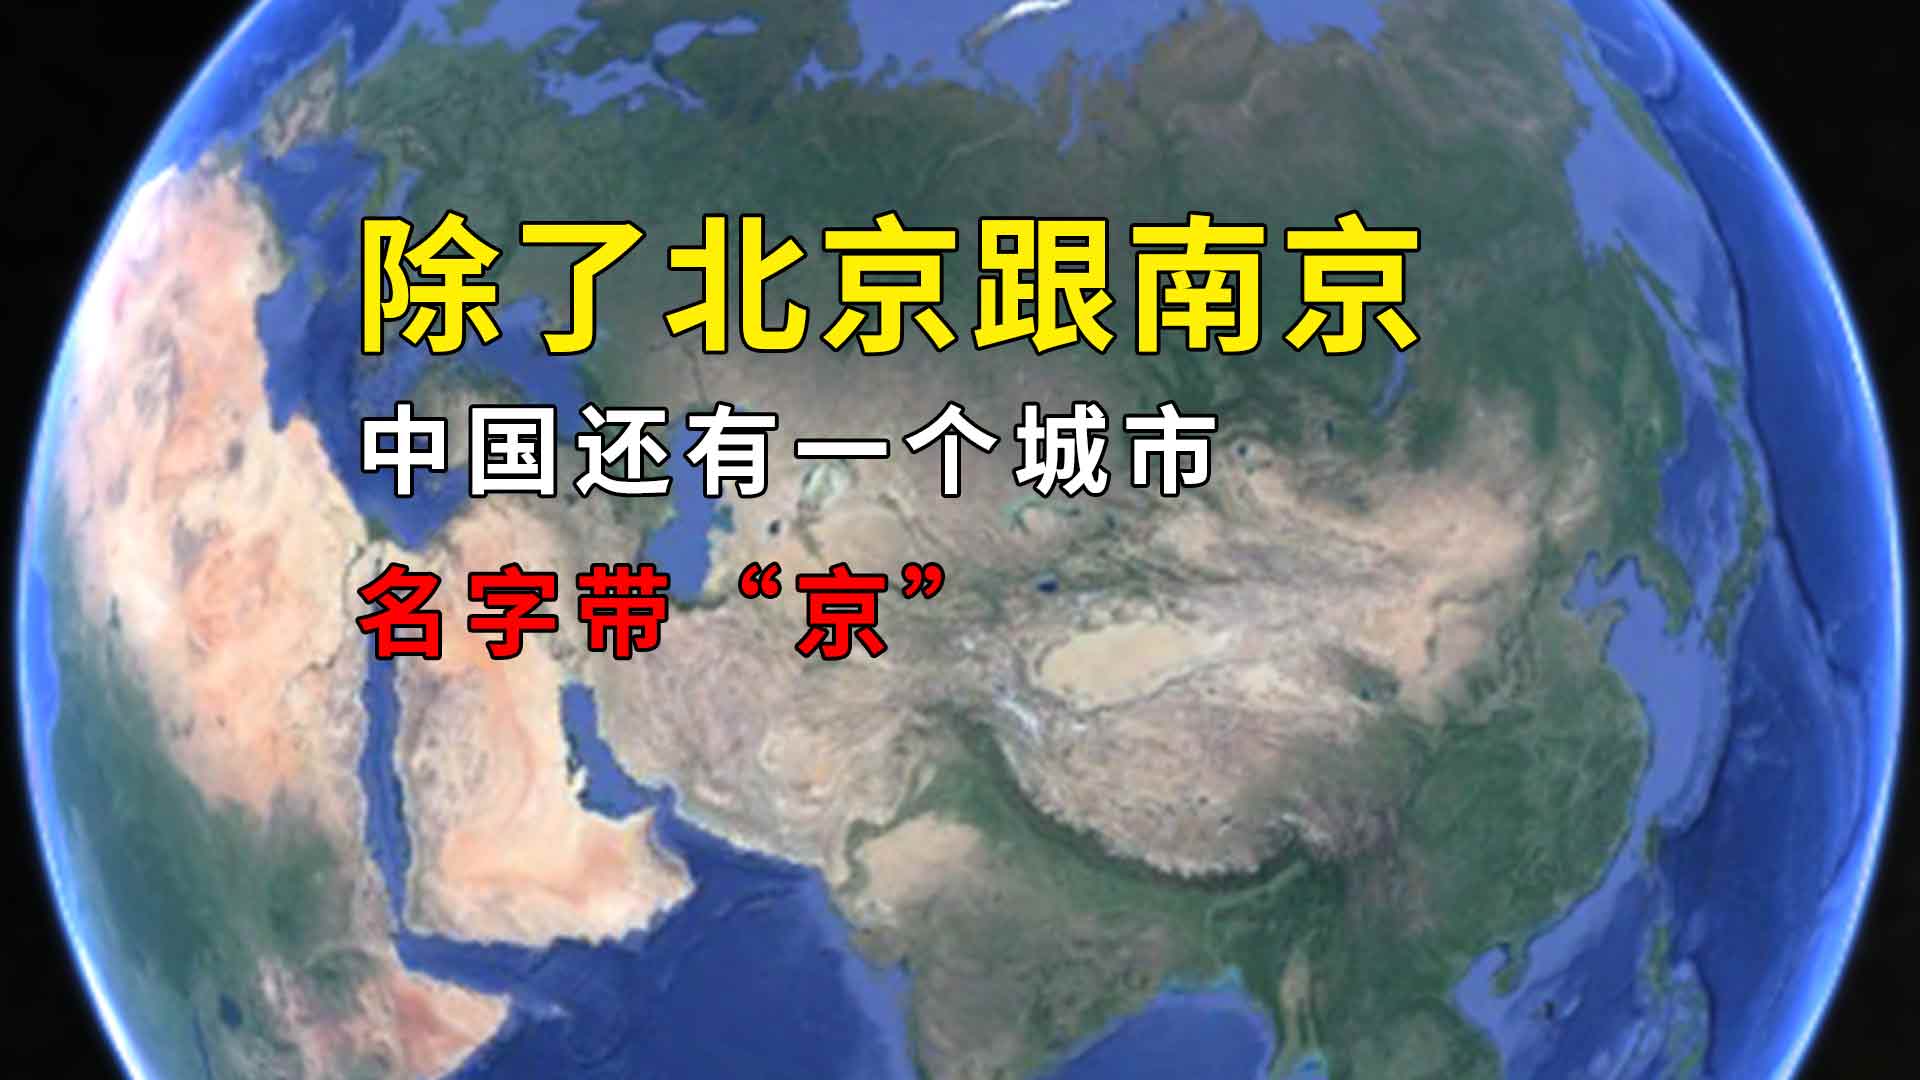 中国有几个城市的名字中有“京”字 中国带“京”字的城市